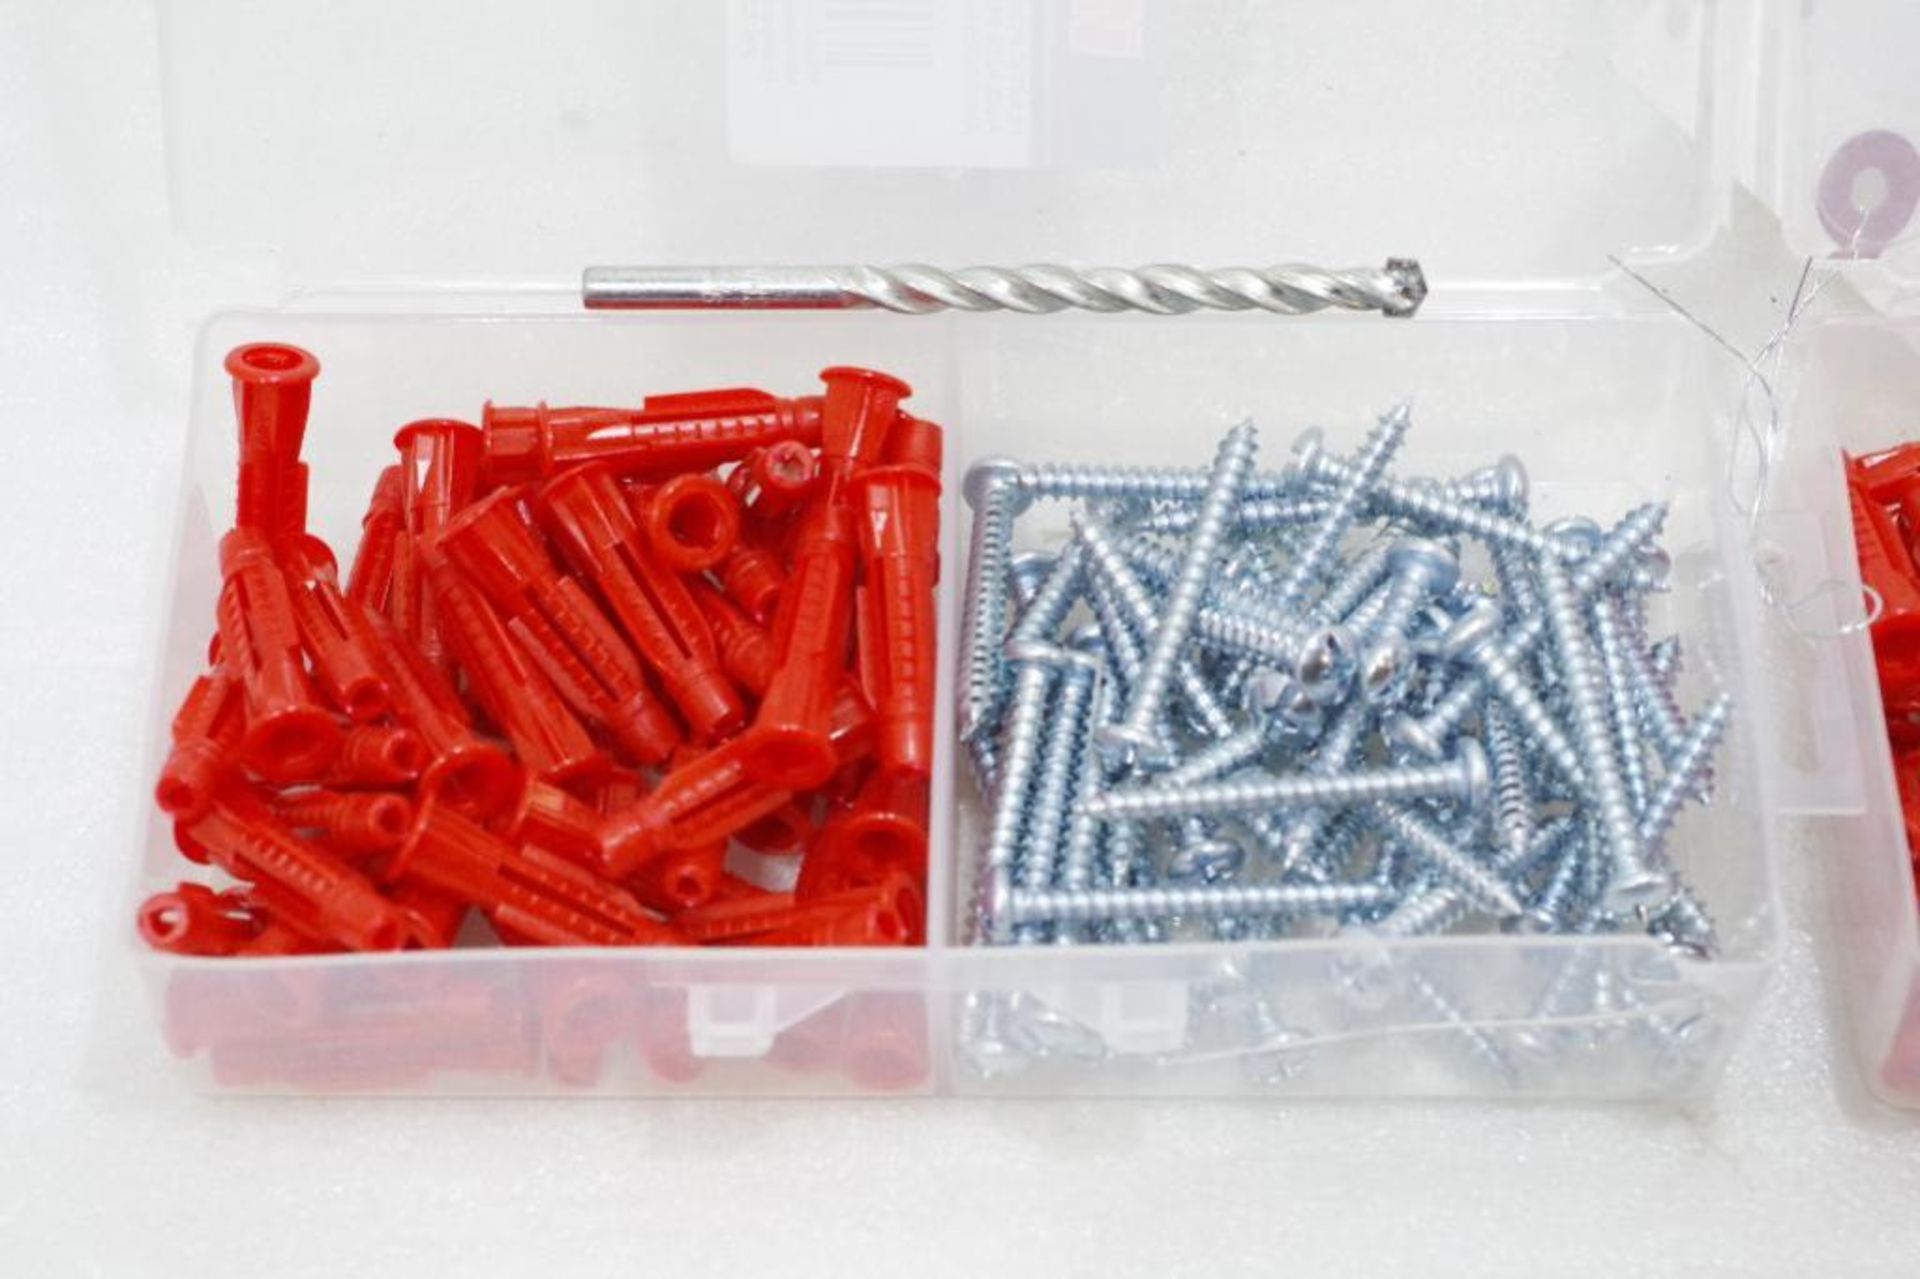 (2) Packs of WESTWARD Plastic Plug Anchors w/ Screws (2 Packs of 50 Each) - Image 3 of 4